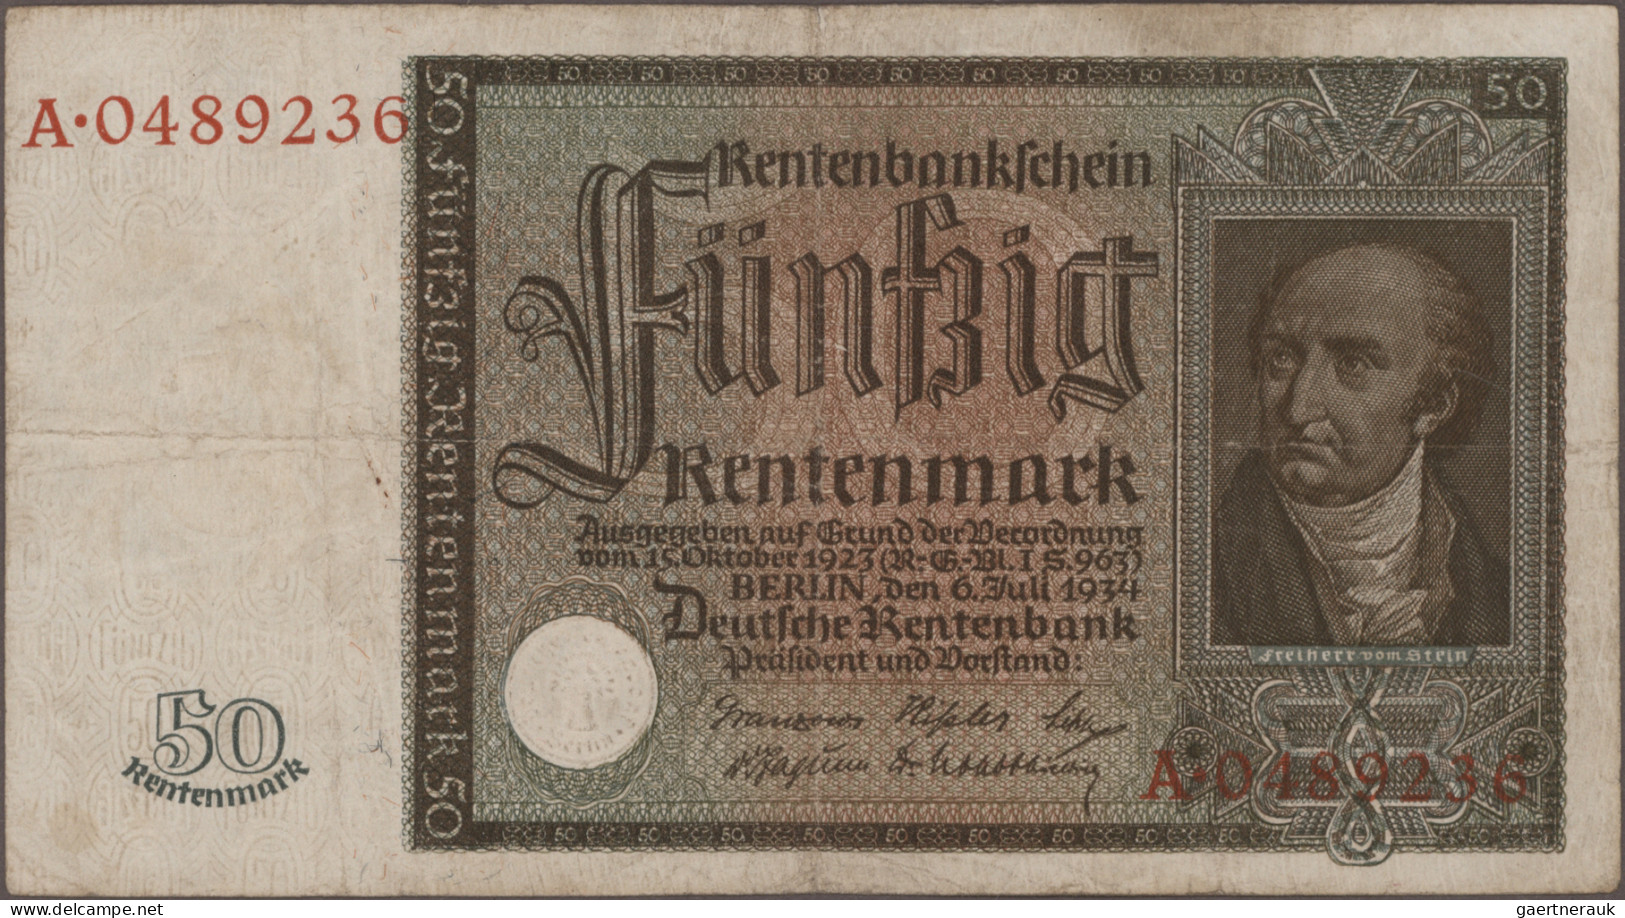 Deutschland - Deutsches Reich bis 1945: Riesiges Konvolut mit ca. 860 Banknoten